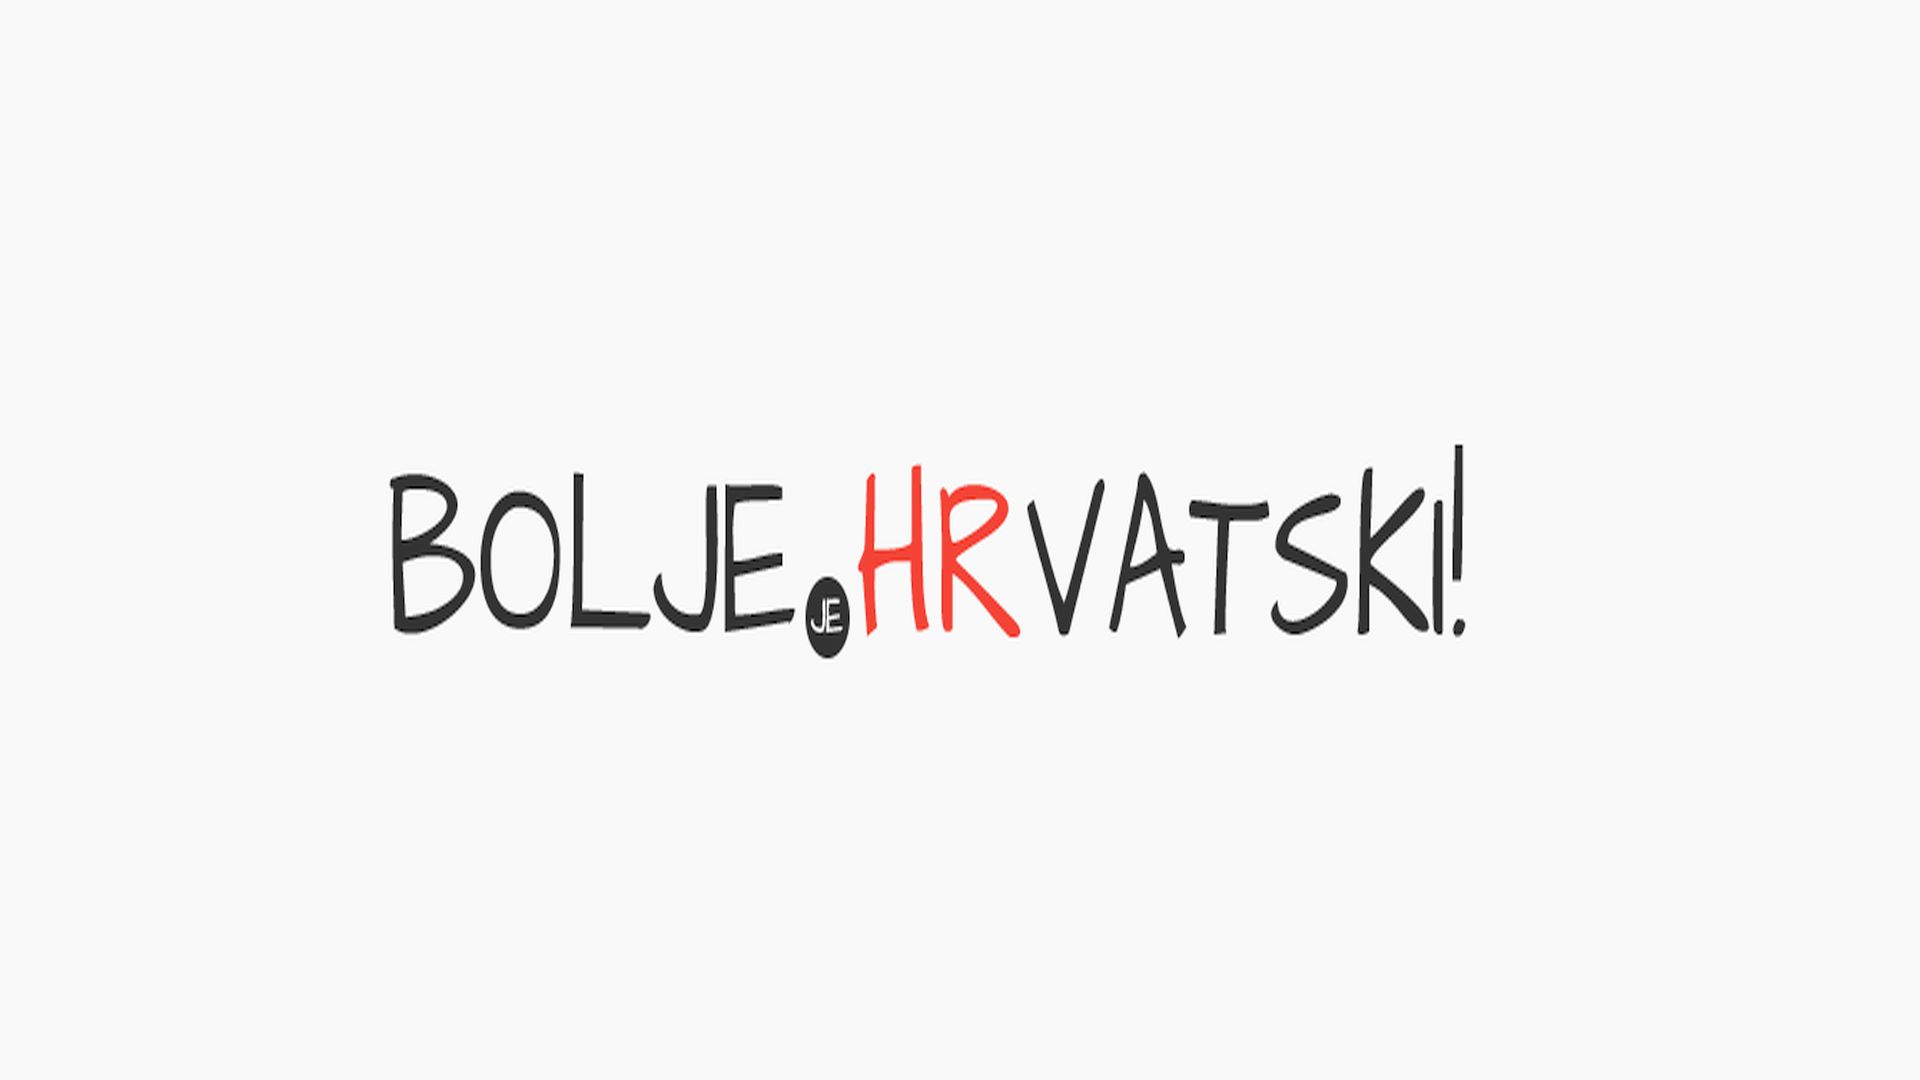 Nemojte downloadati već preuzmite novu aplikaciju za outsourcing tuđica u bolji, hrvatski jezik